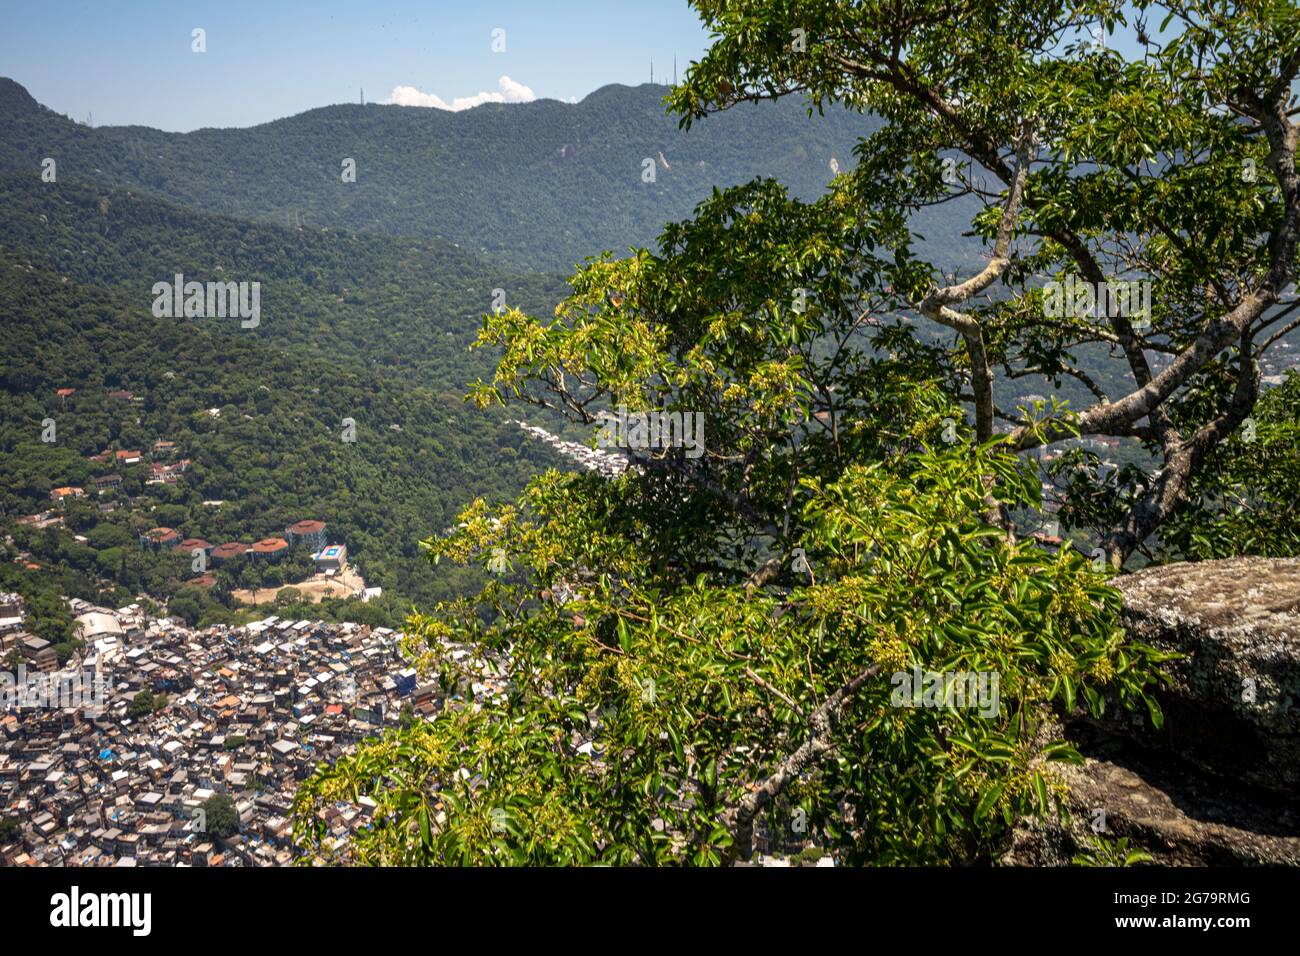 Erhöhter Blick von der Klippe des Hügels zweier Brüder (dos irmaos) mit der leica m10 über die Rocinha Favela - dichtes Slum voller Ziegelhäuser - in Rio de Janeiro, Brasilien, von der Spitze des Dois Irmaos Berges. Stockfoto